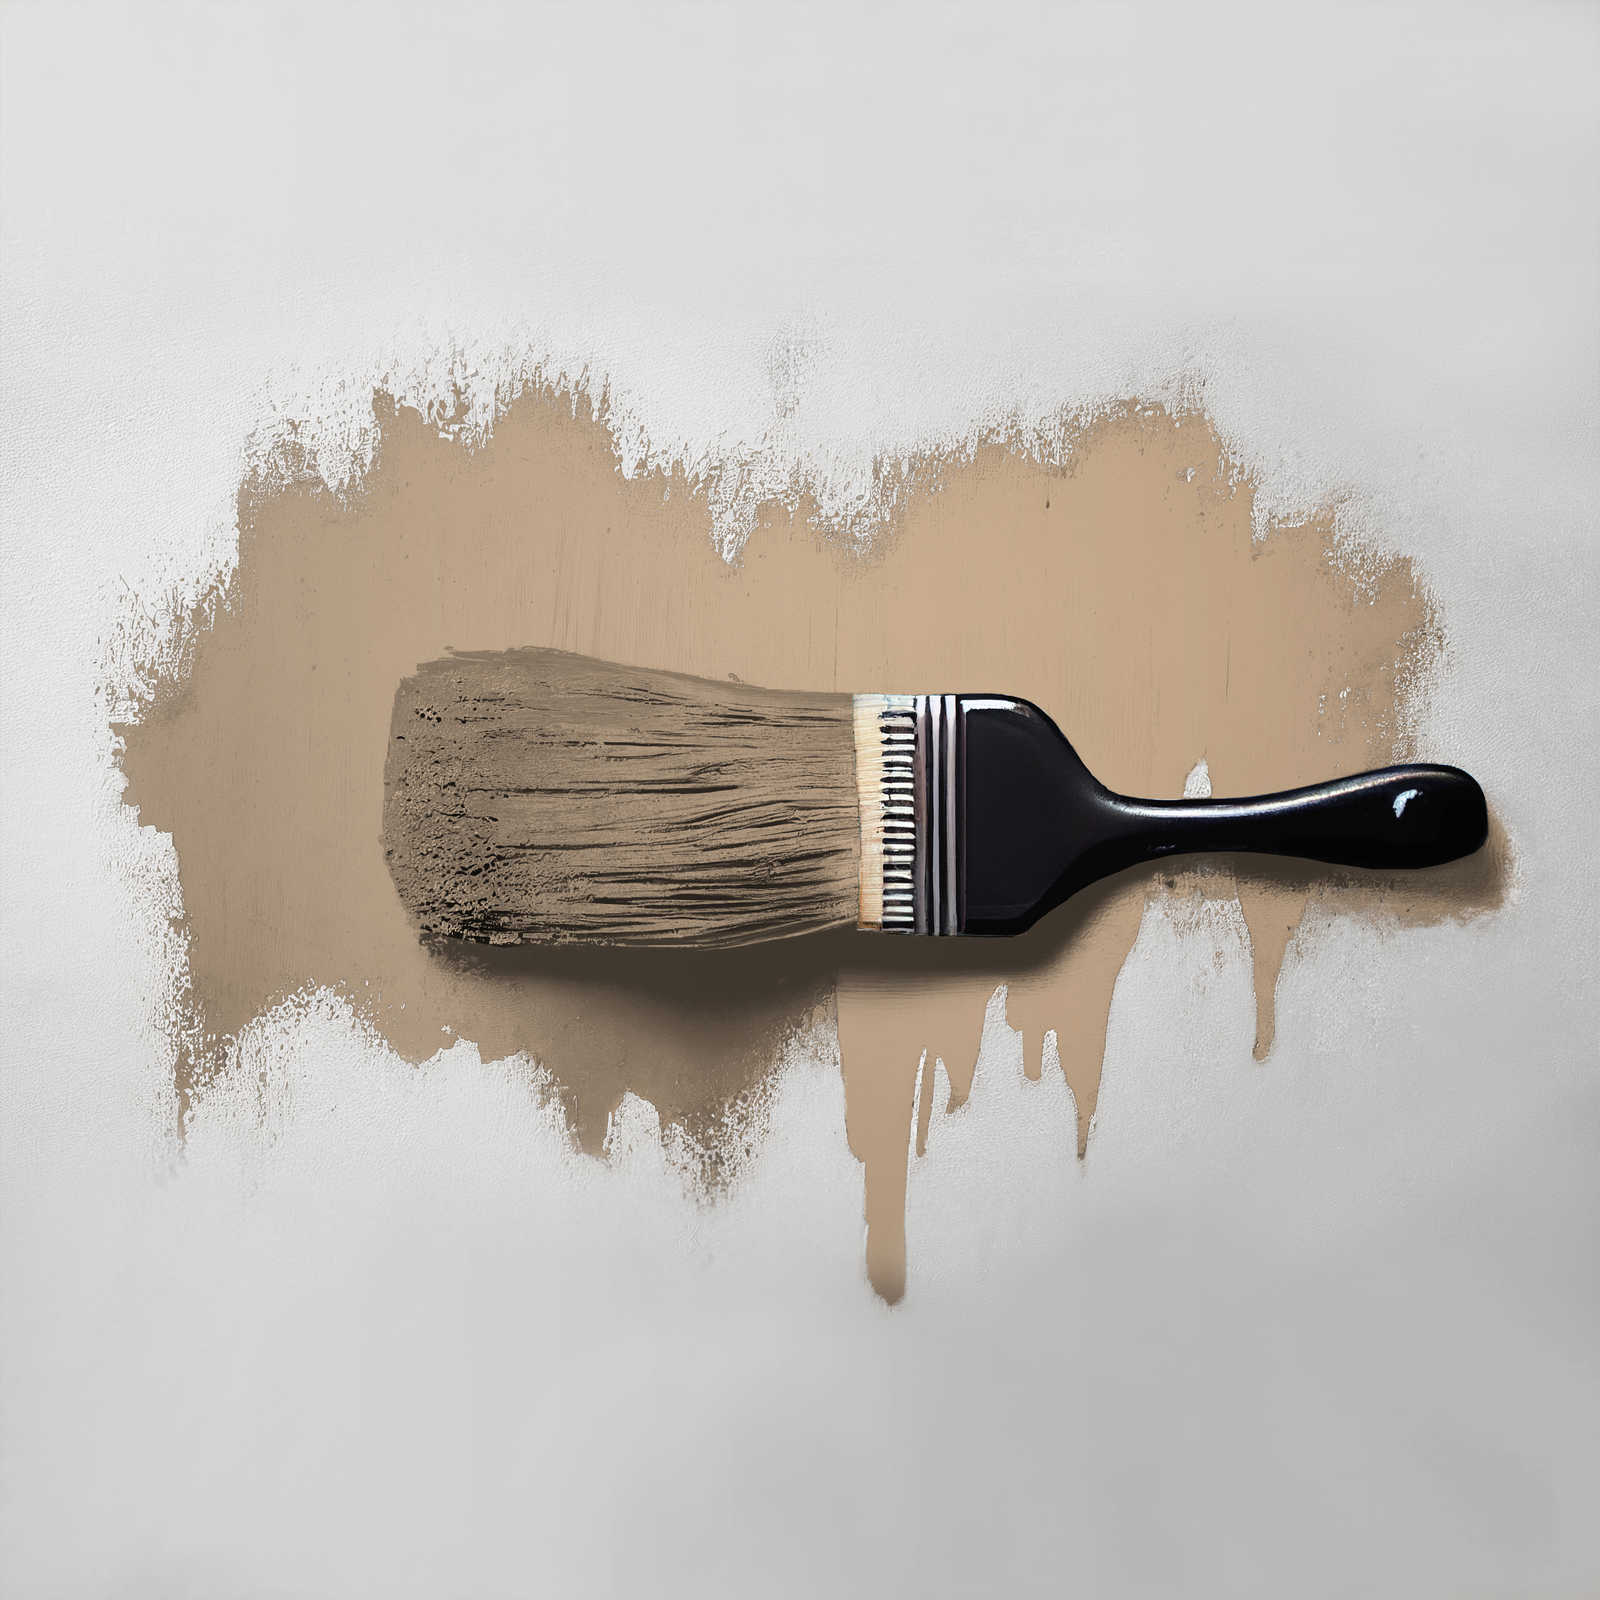             Pittura murale TCK6005 »Friendly Fennel« in marrone beige casalingo – 2,5 litri
        